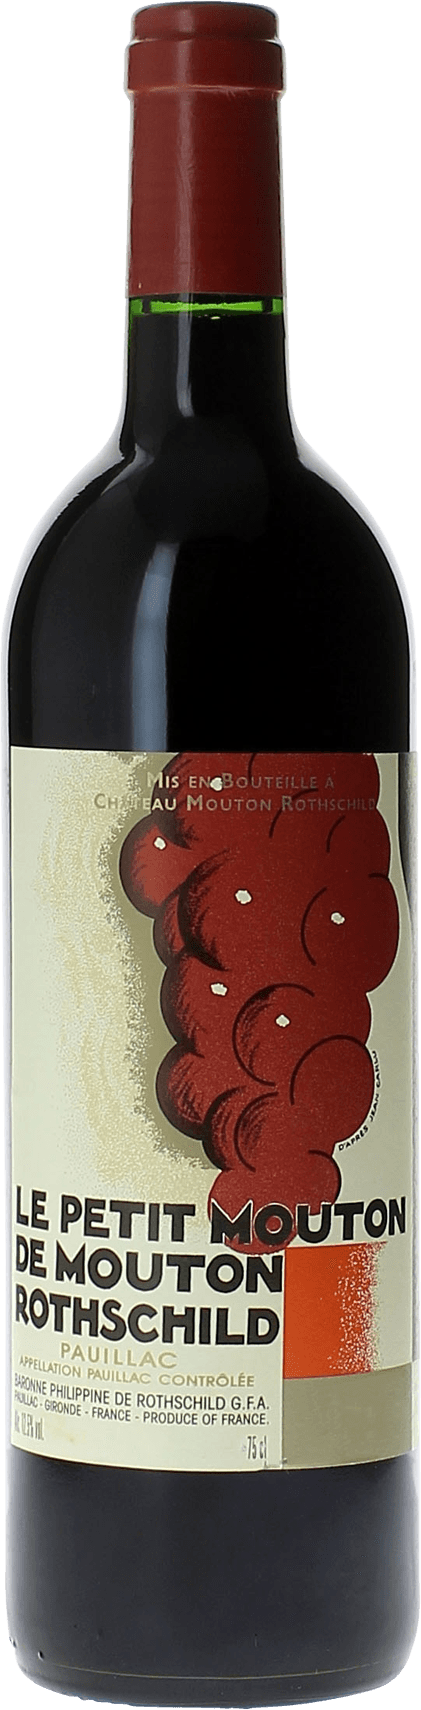 Petit mouton 2014 2nd vin de Mouton Rothschild Pauillac, Bordeaux rouge